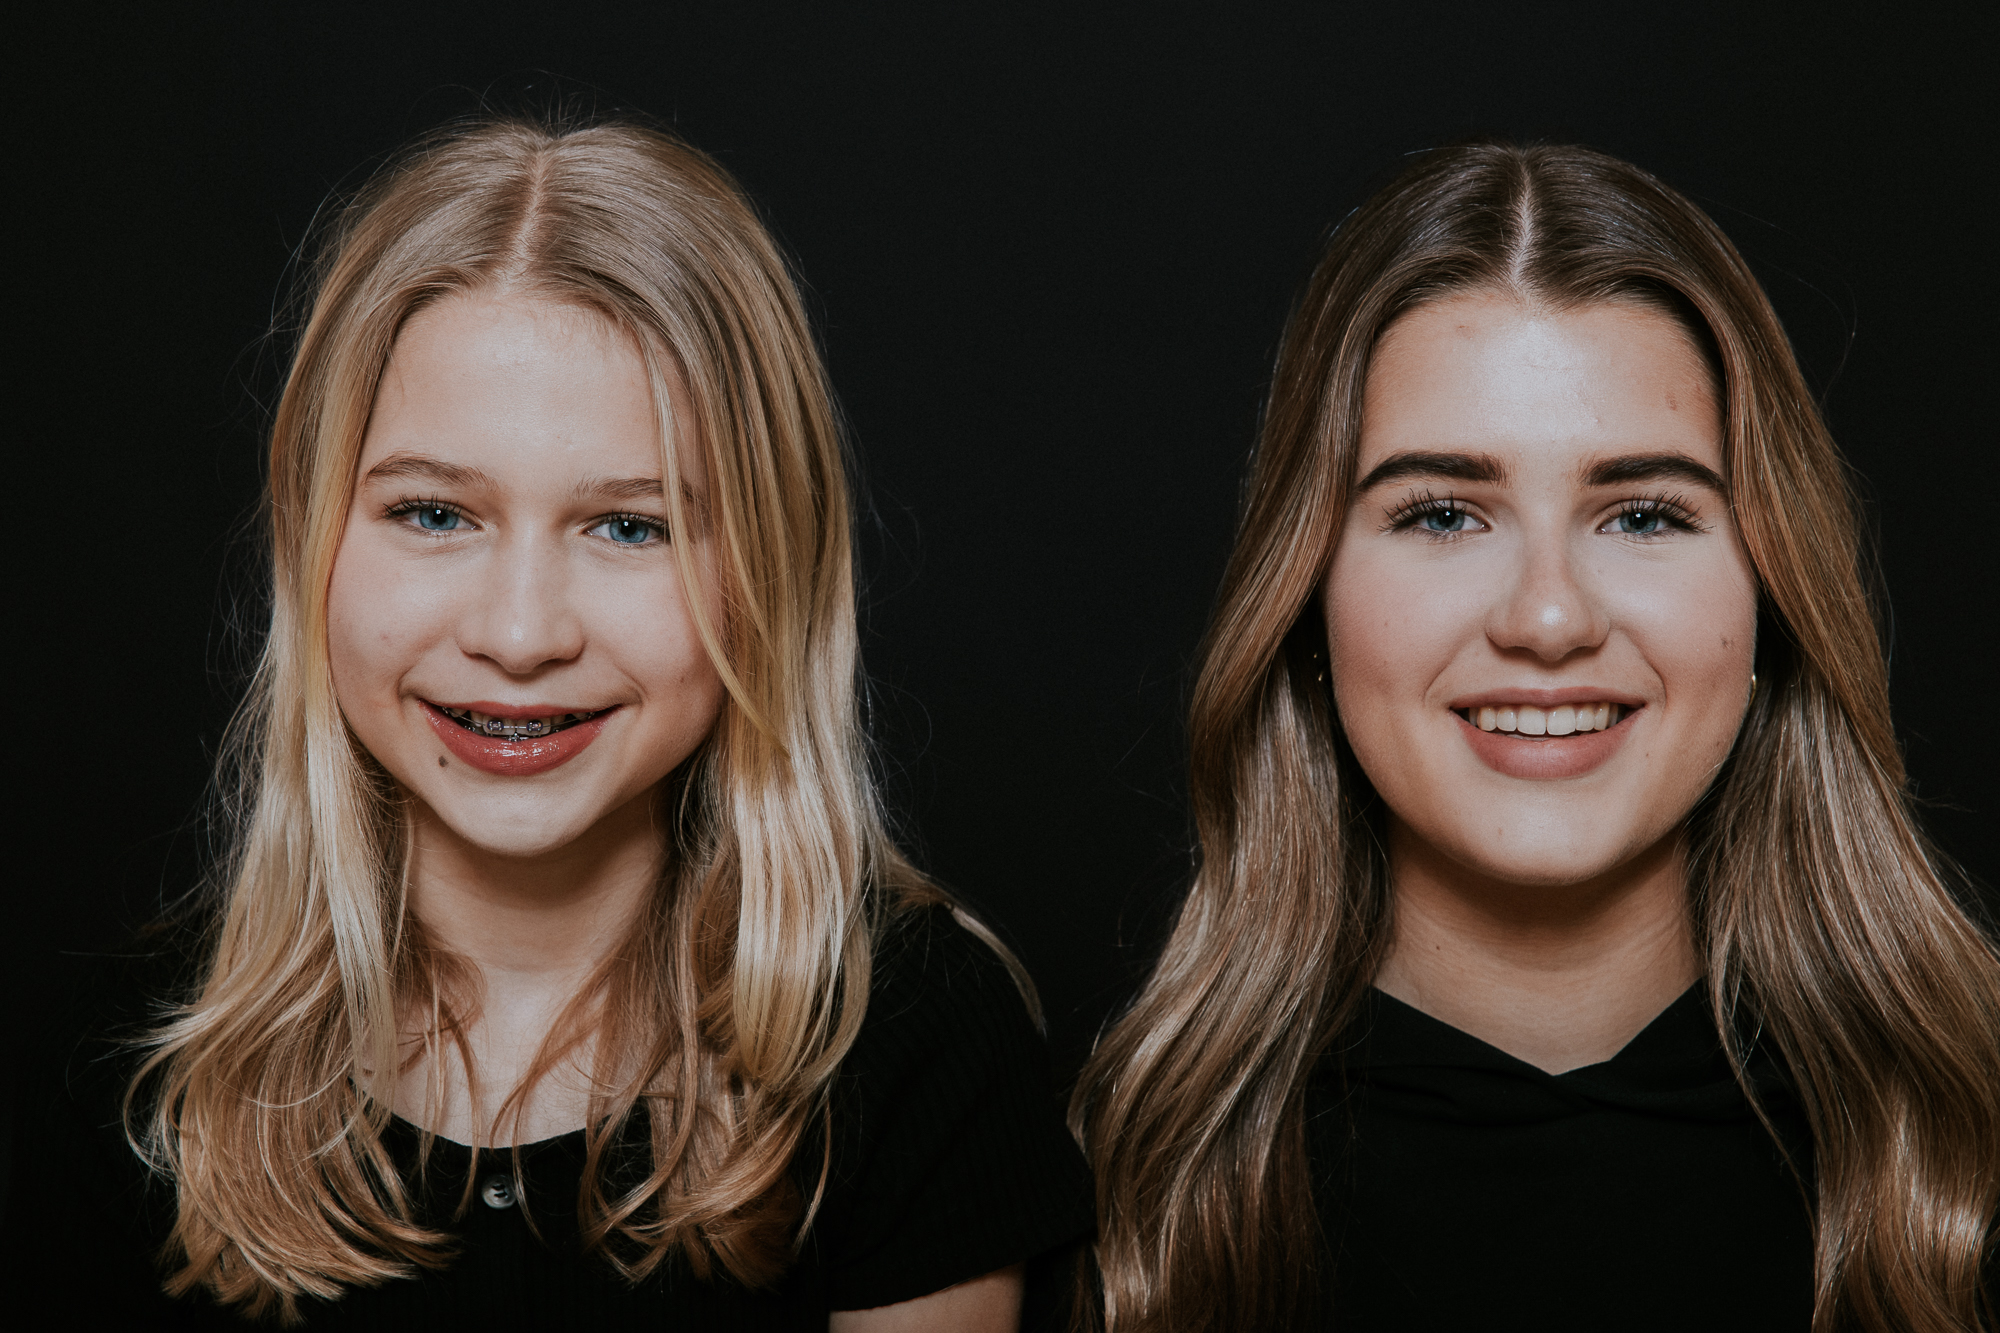 Studio dubbelportret van twee zusjes door fotograaf Nickie Fotografie uit Dokkum, Friesland.